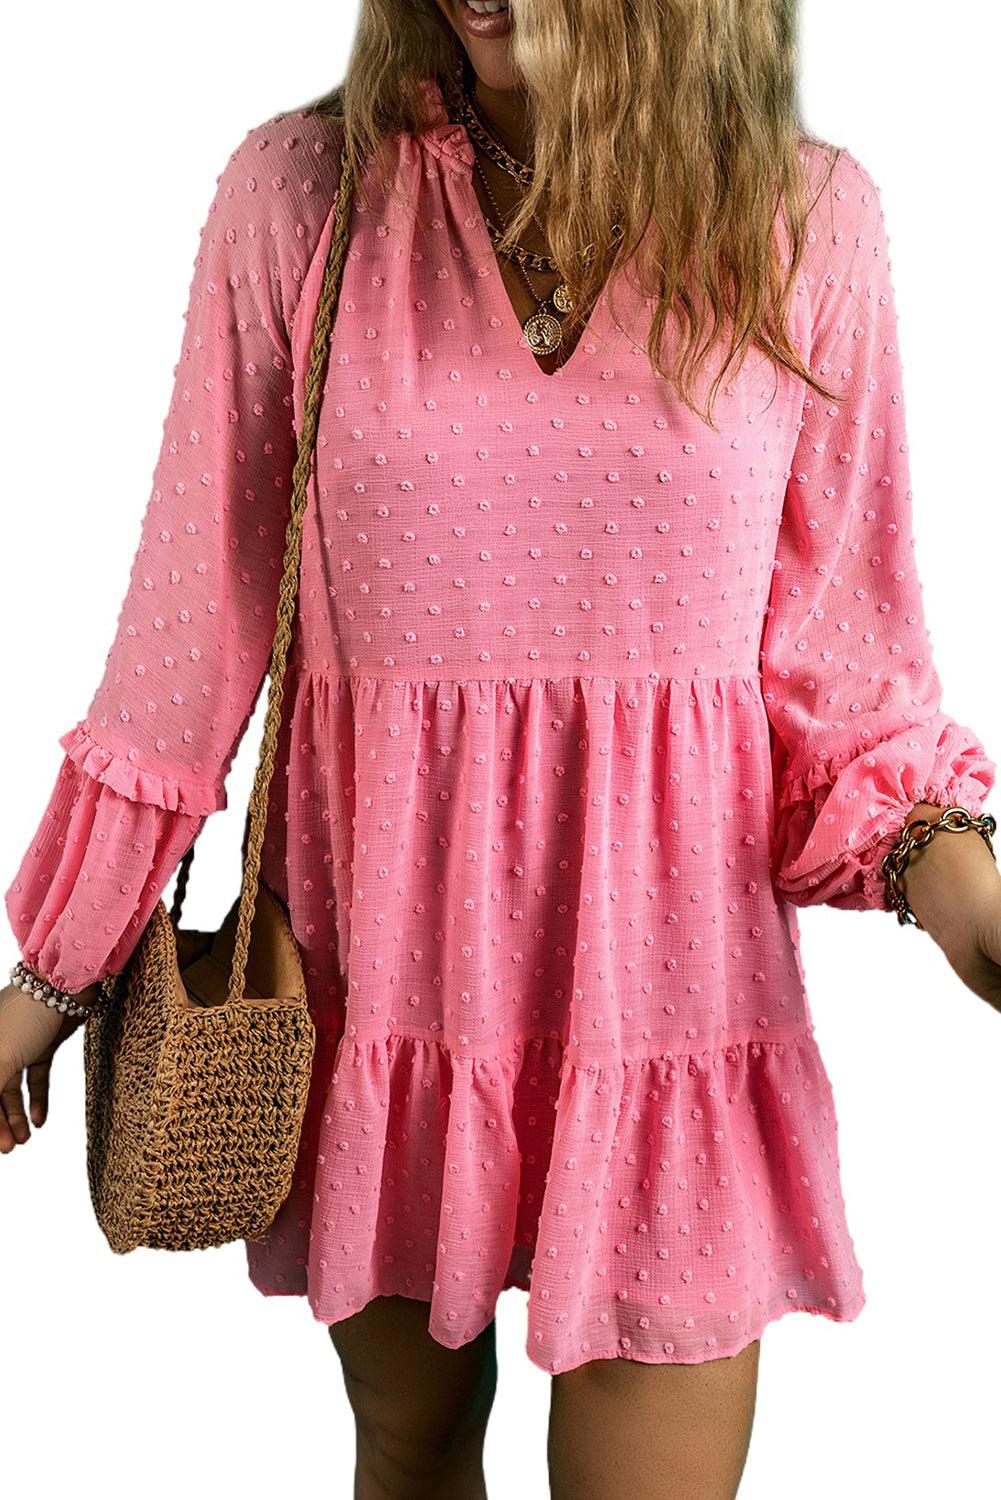 Pink Swiss Dotted Split Neck Tiered Ruffled Short Dress - L & M Kee, LLC